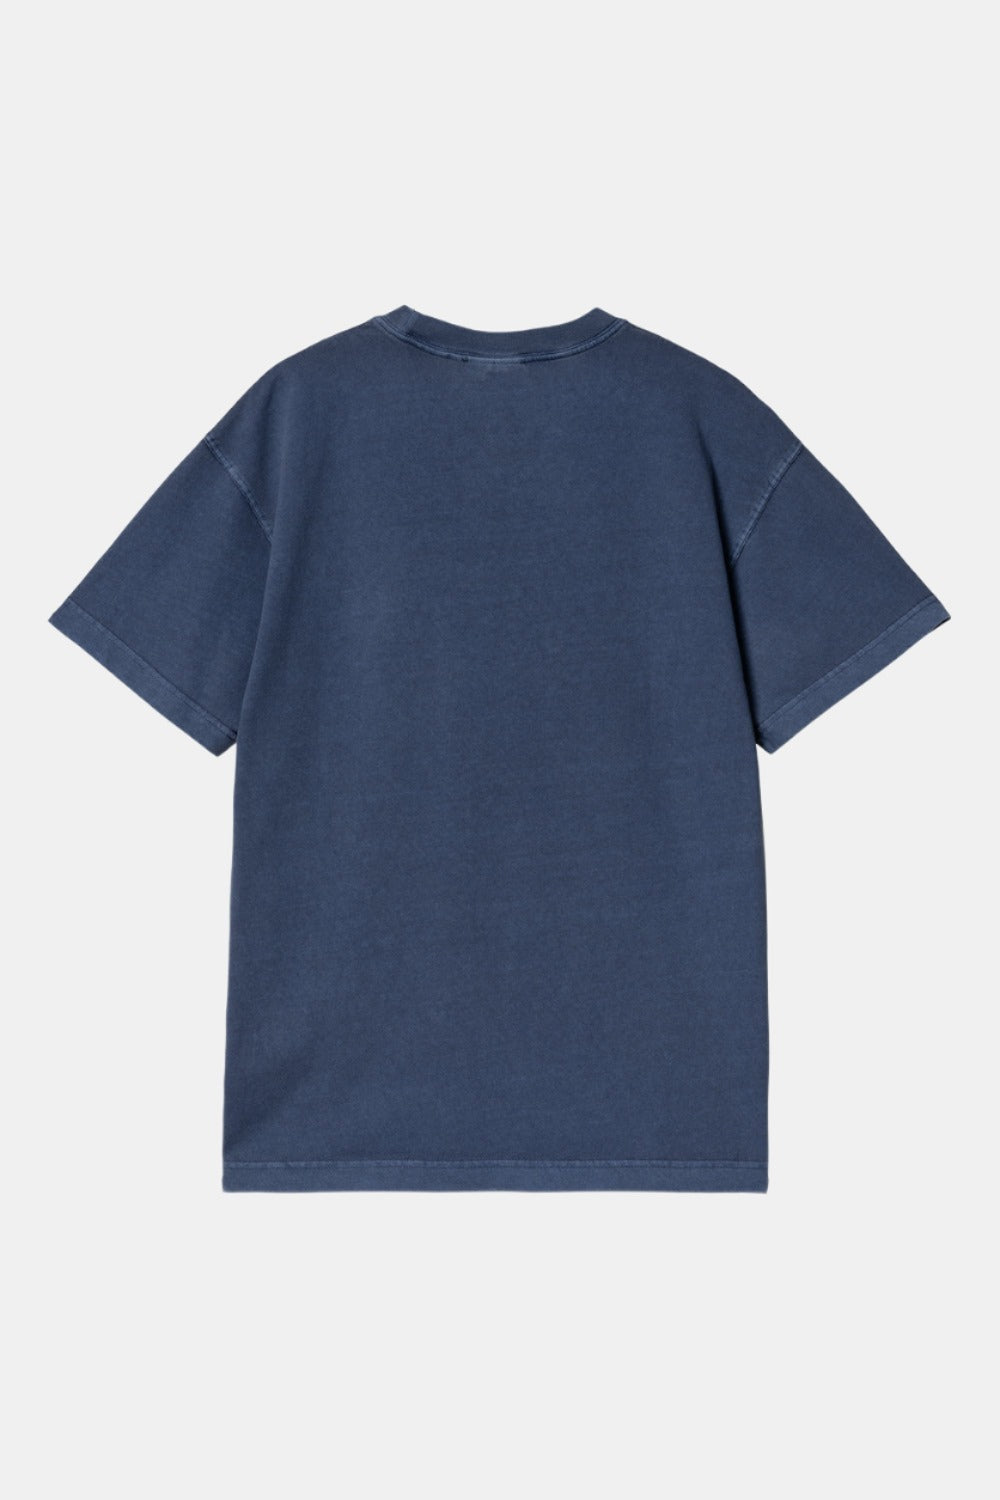 Carhartt WIP Short Sleeve Nelson T-Shirt (Elder)